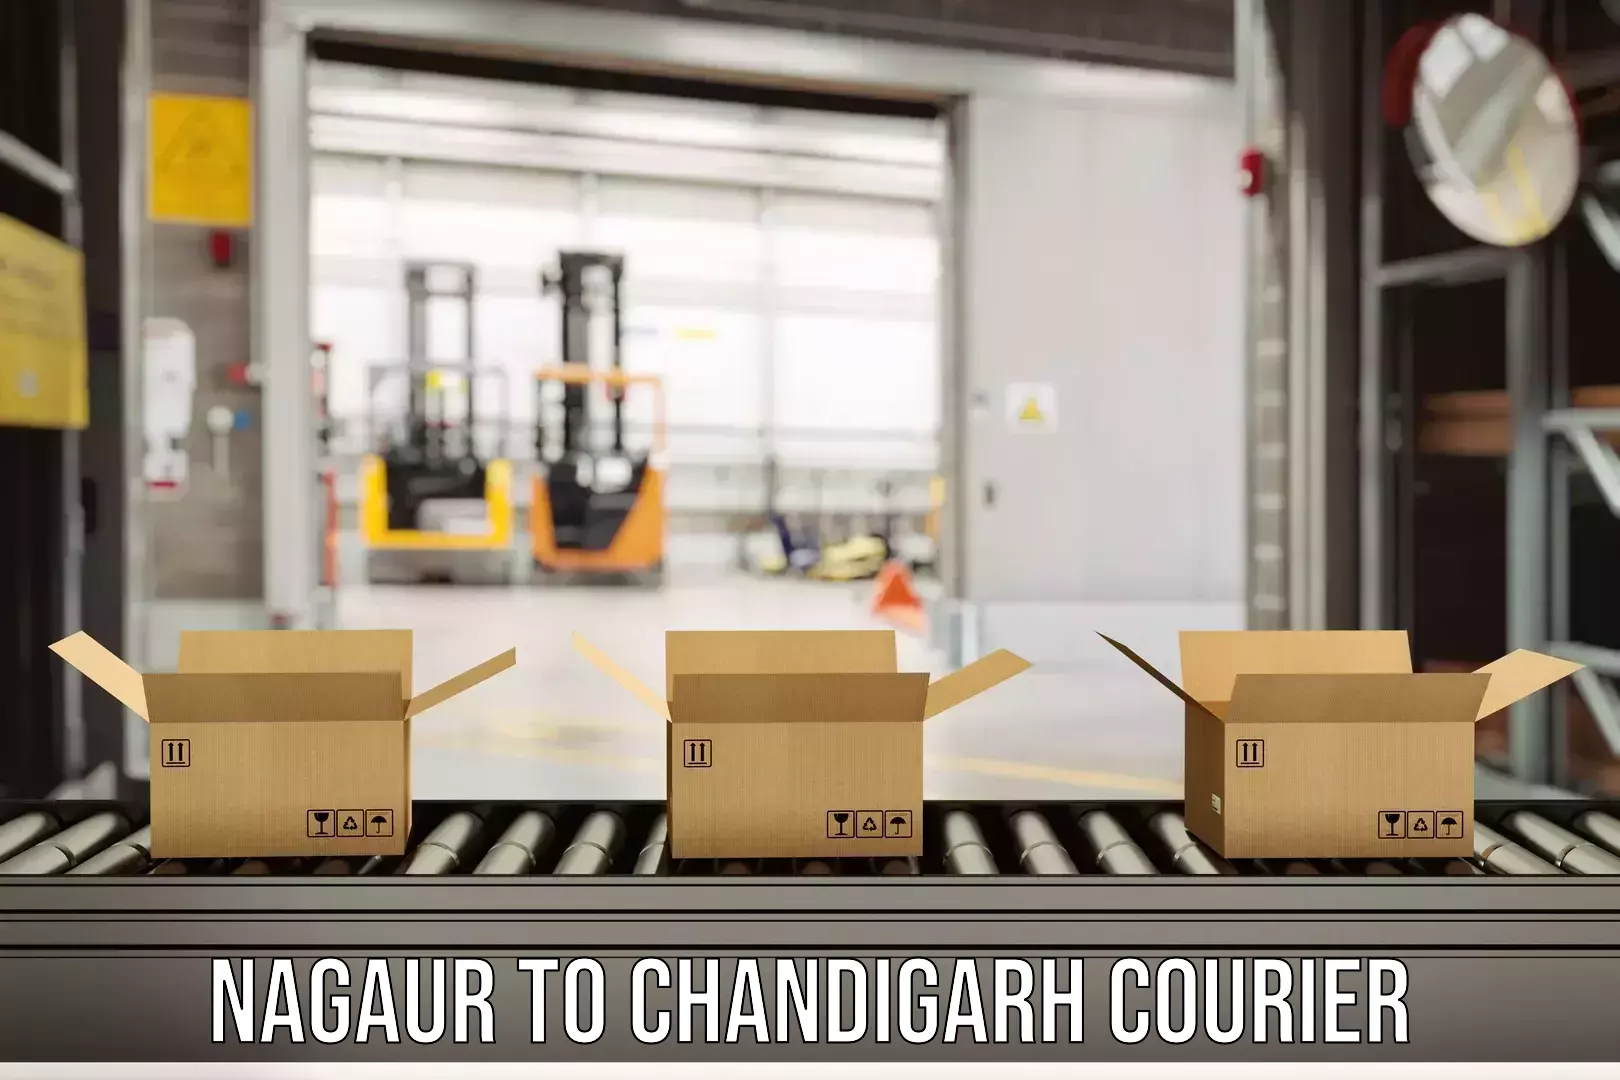 Efficient parcel service Nagaur to Chandigarh